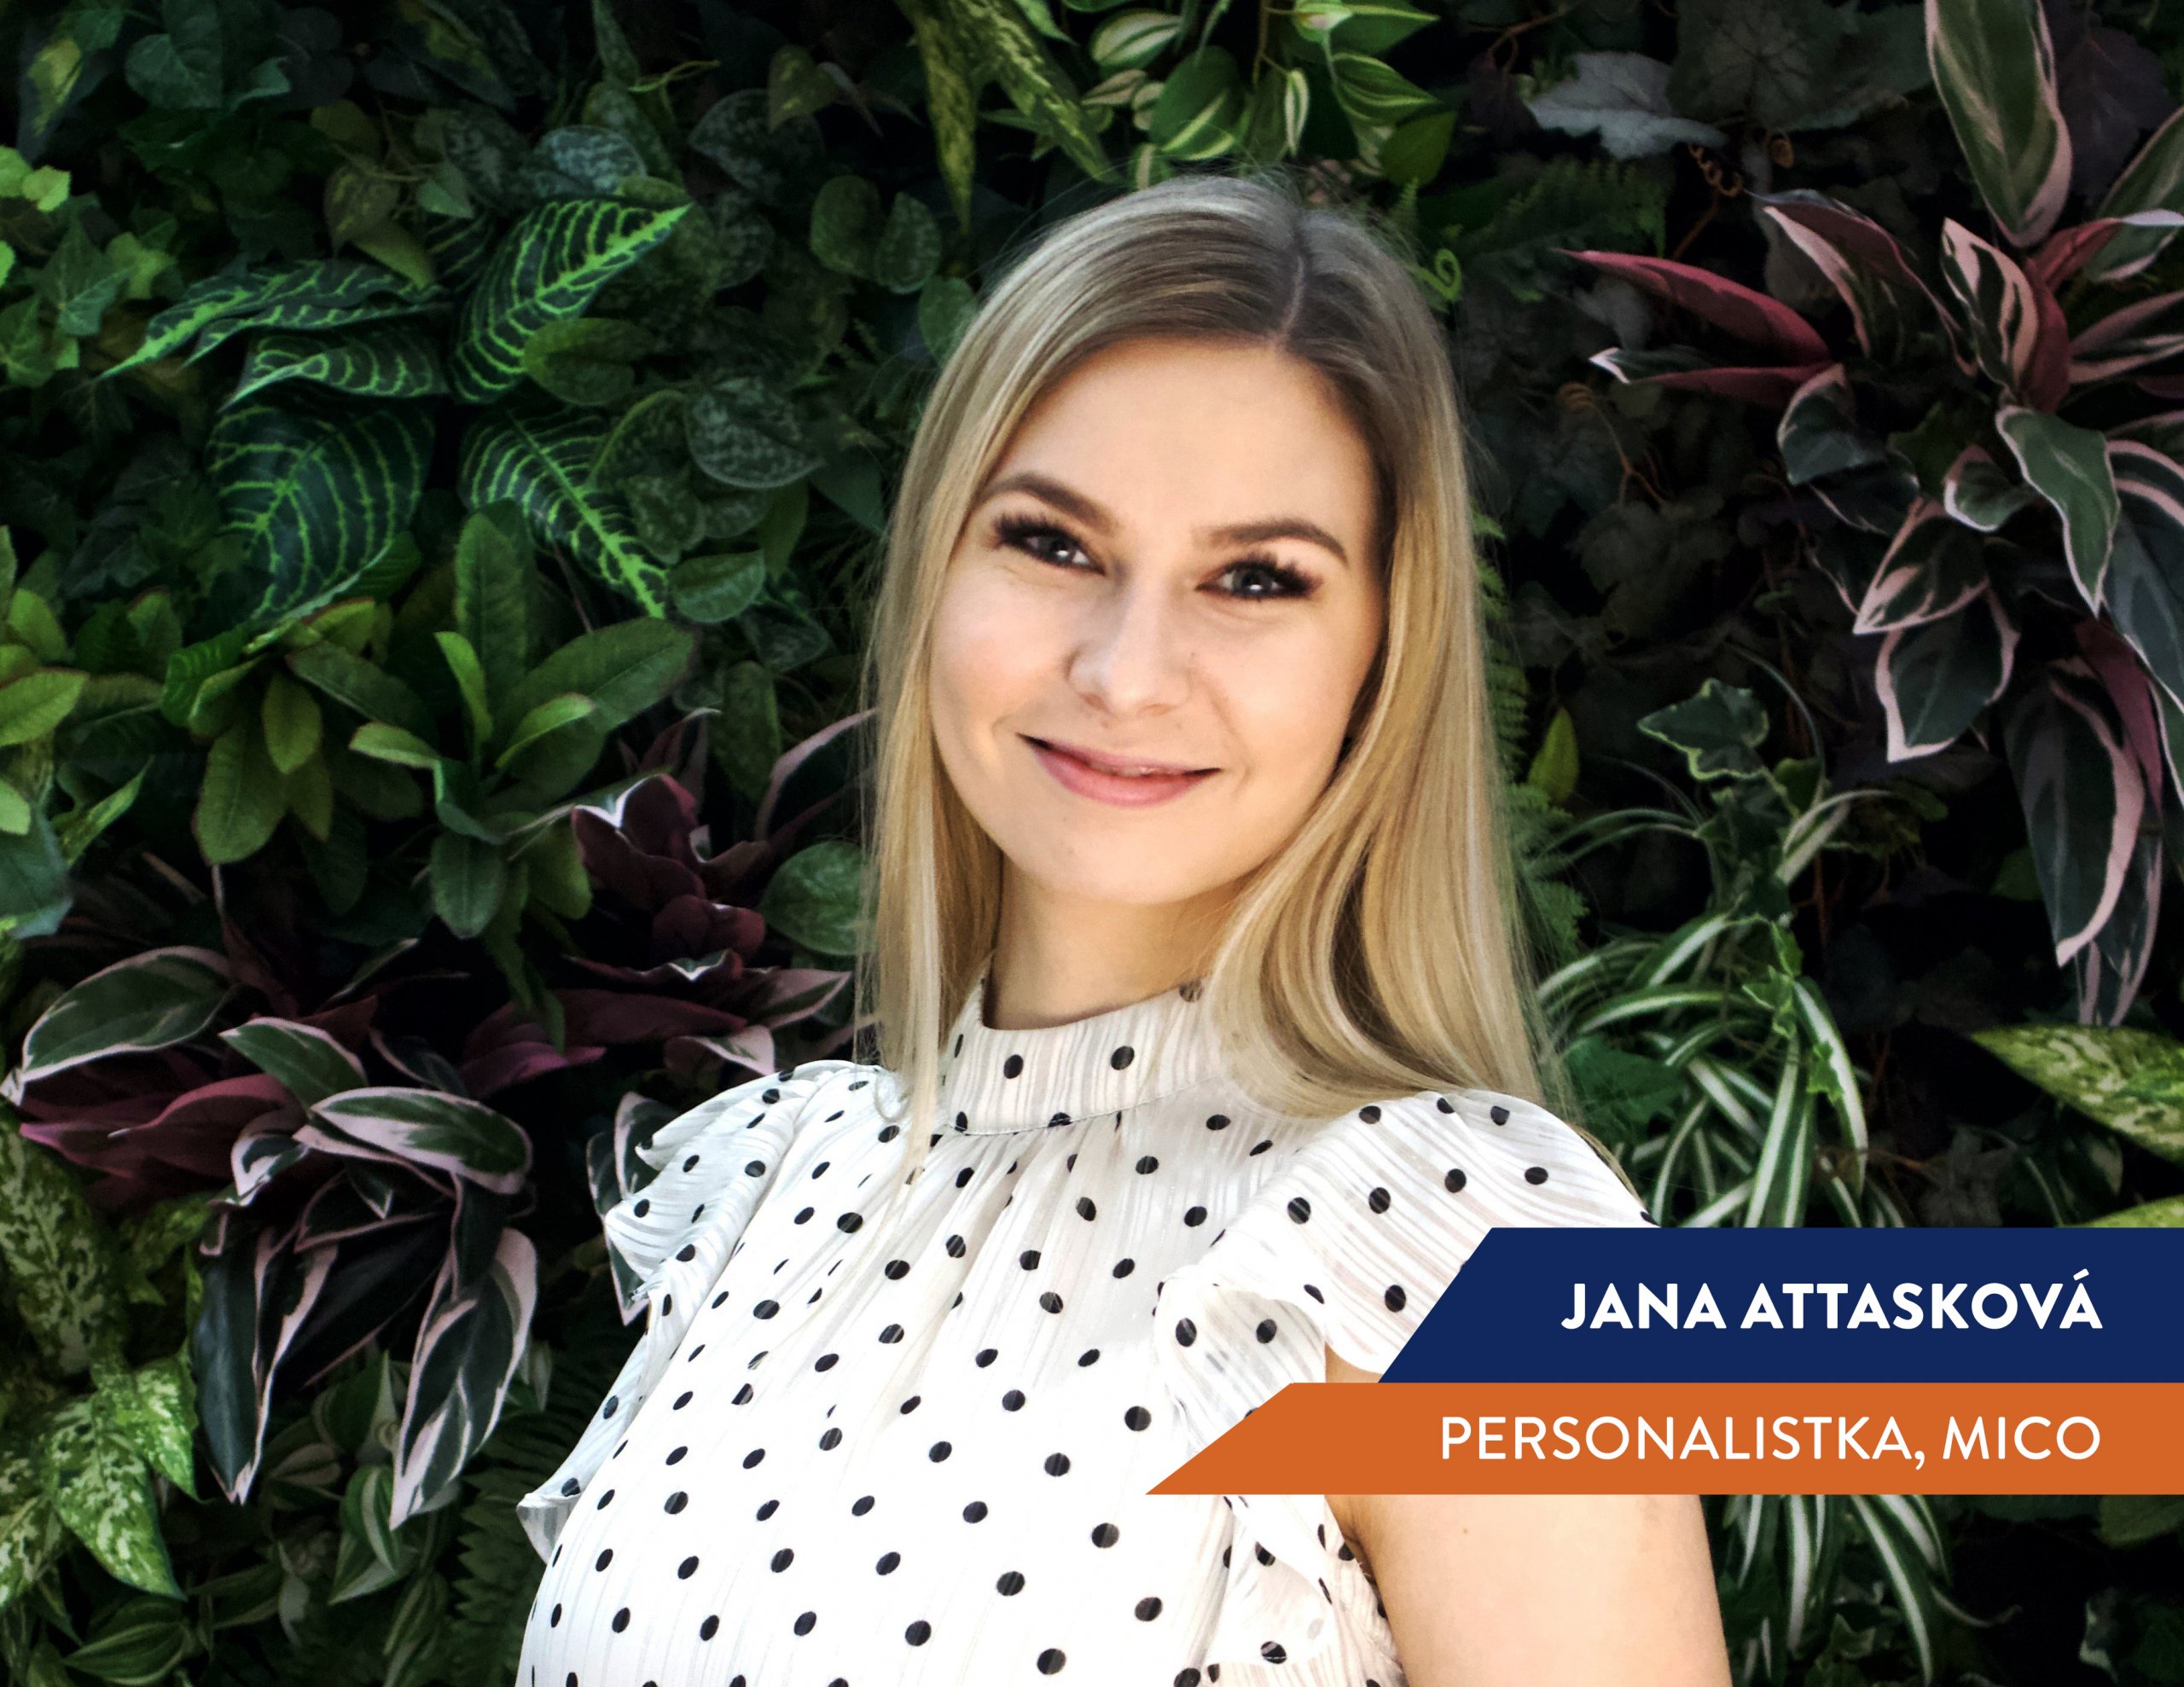 HR Talent Program: Jana Attasková